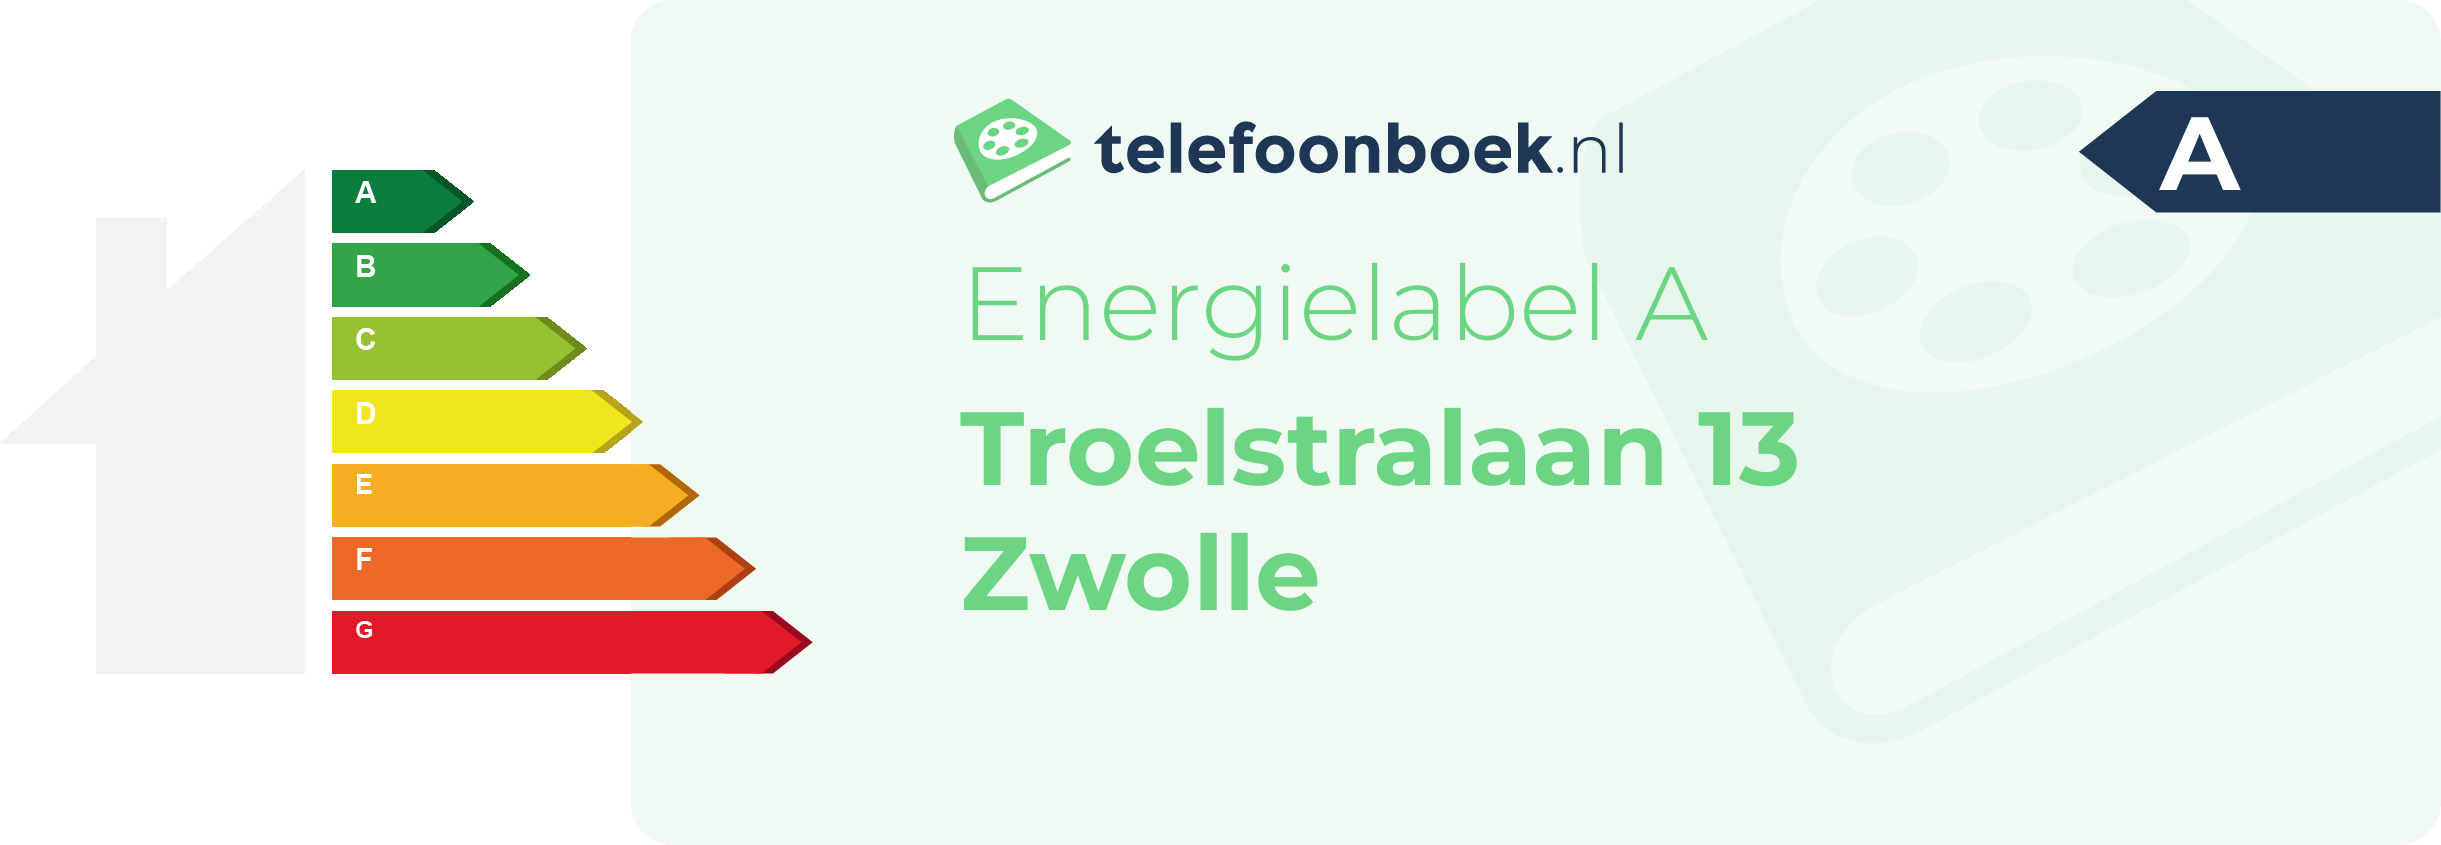 Energielabel Troelstralaan 13 Zwolle